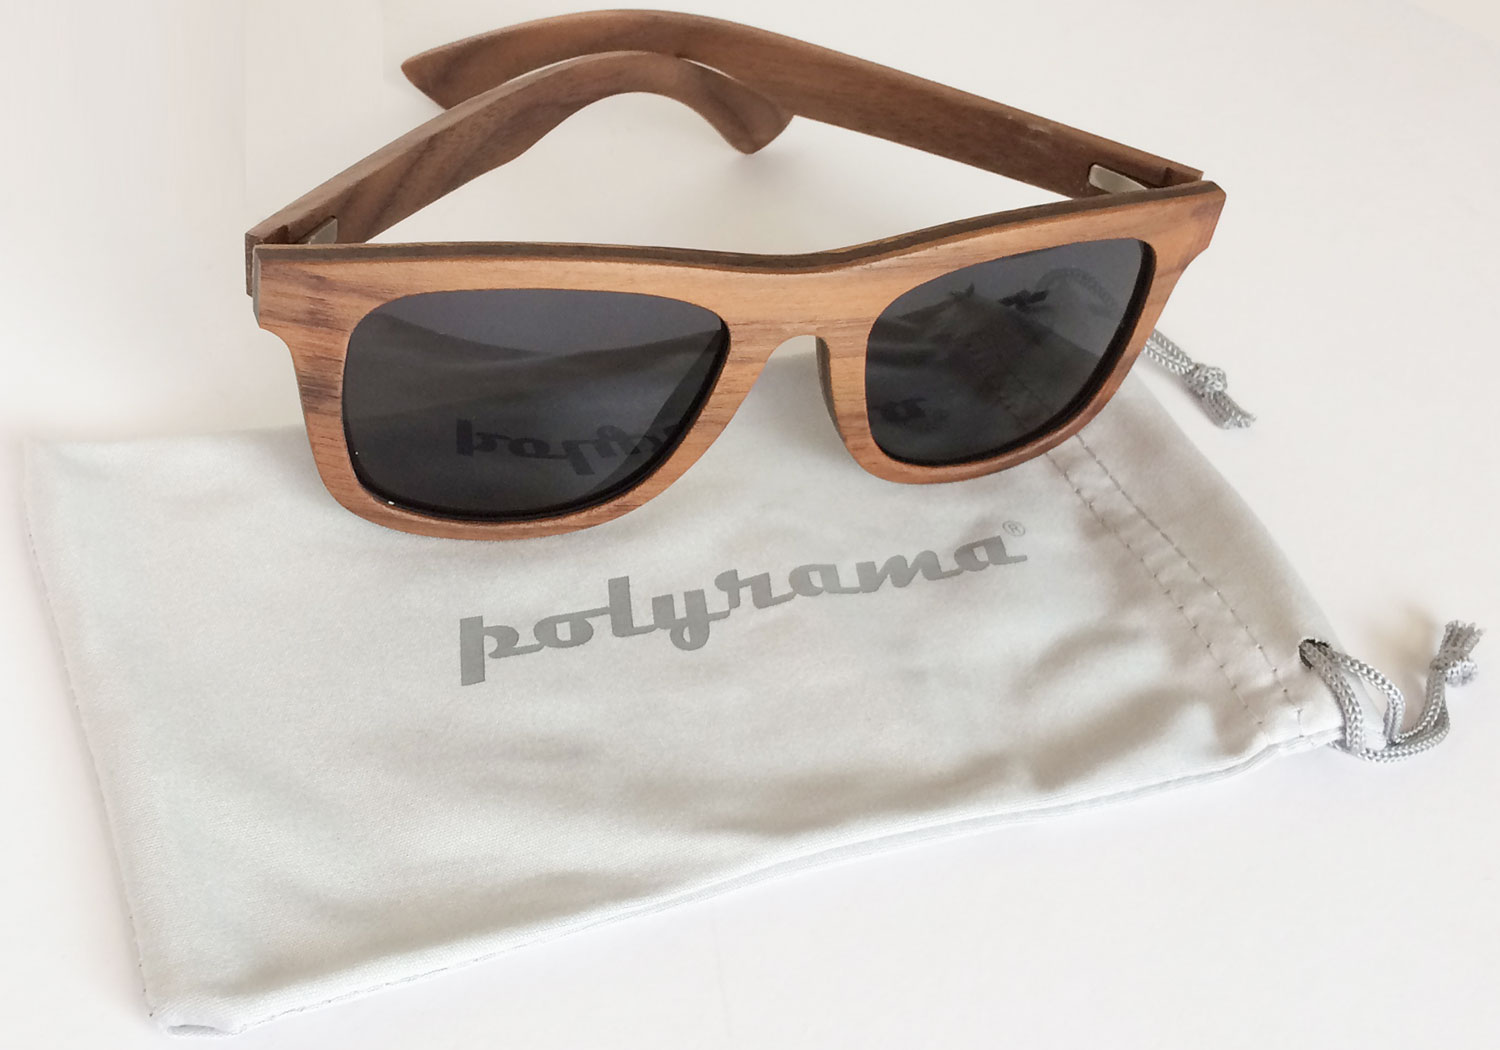 Walnut wood sunglasses with polarized lenses